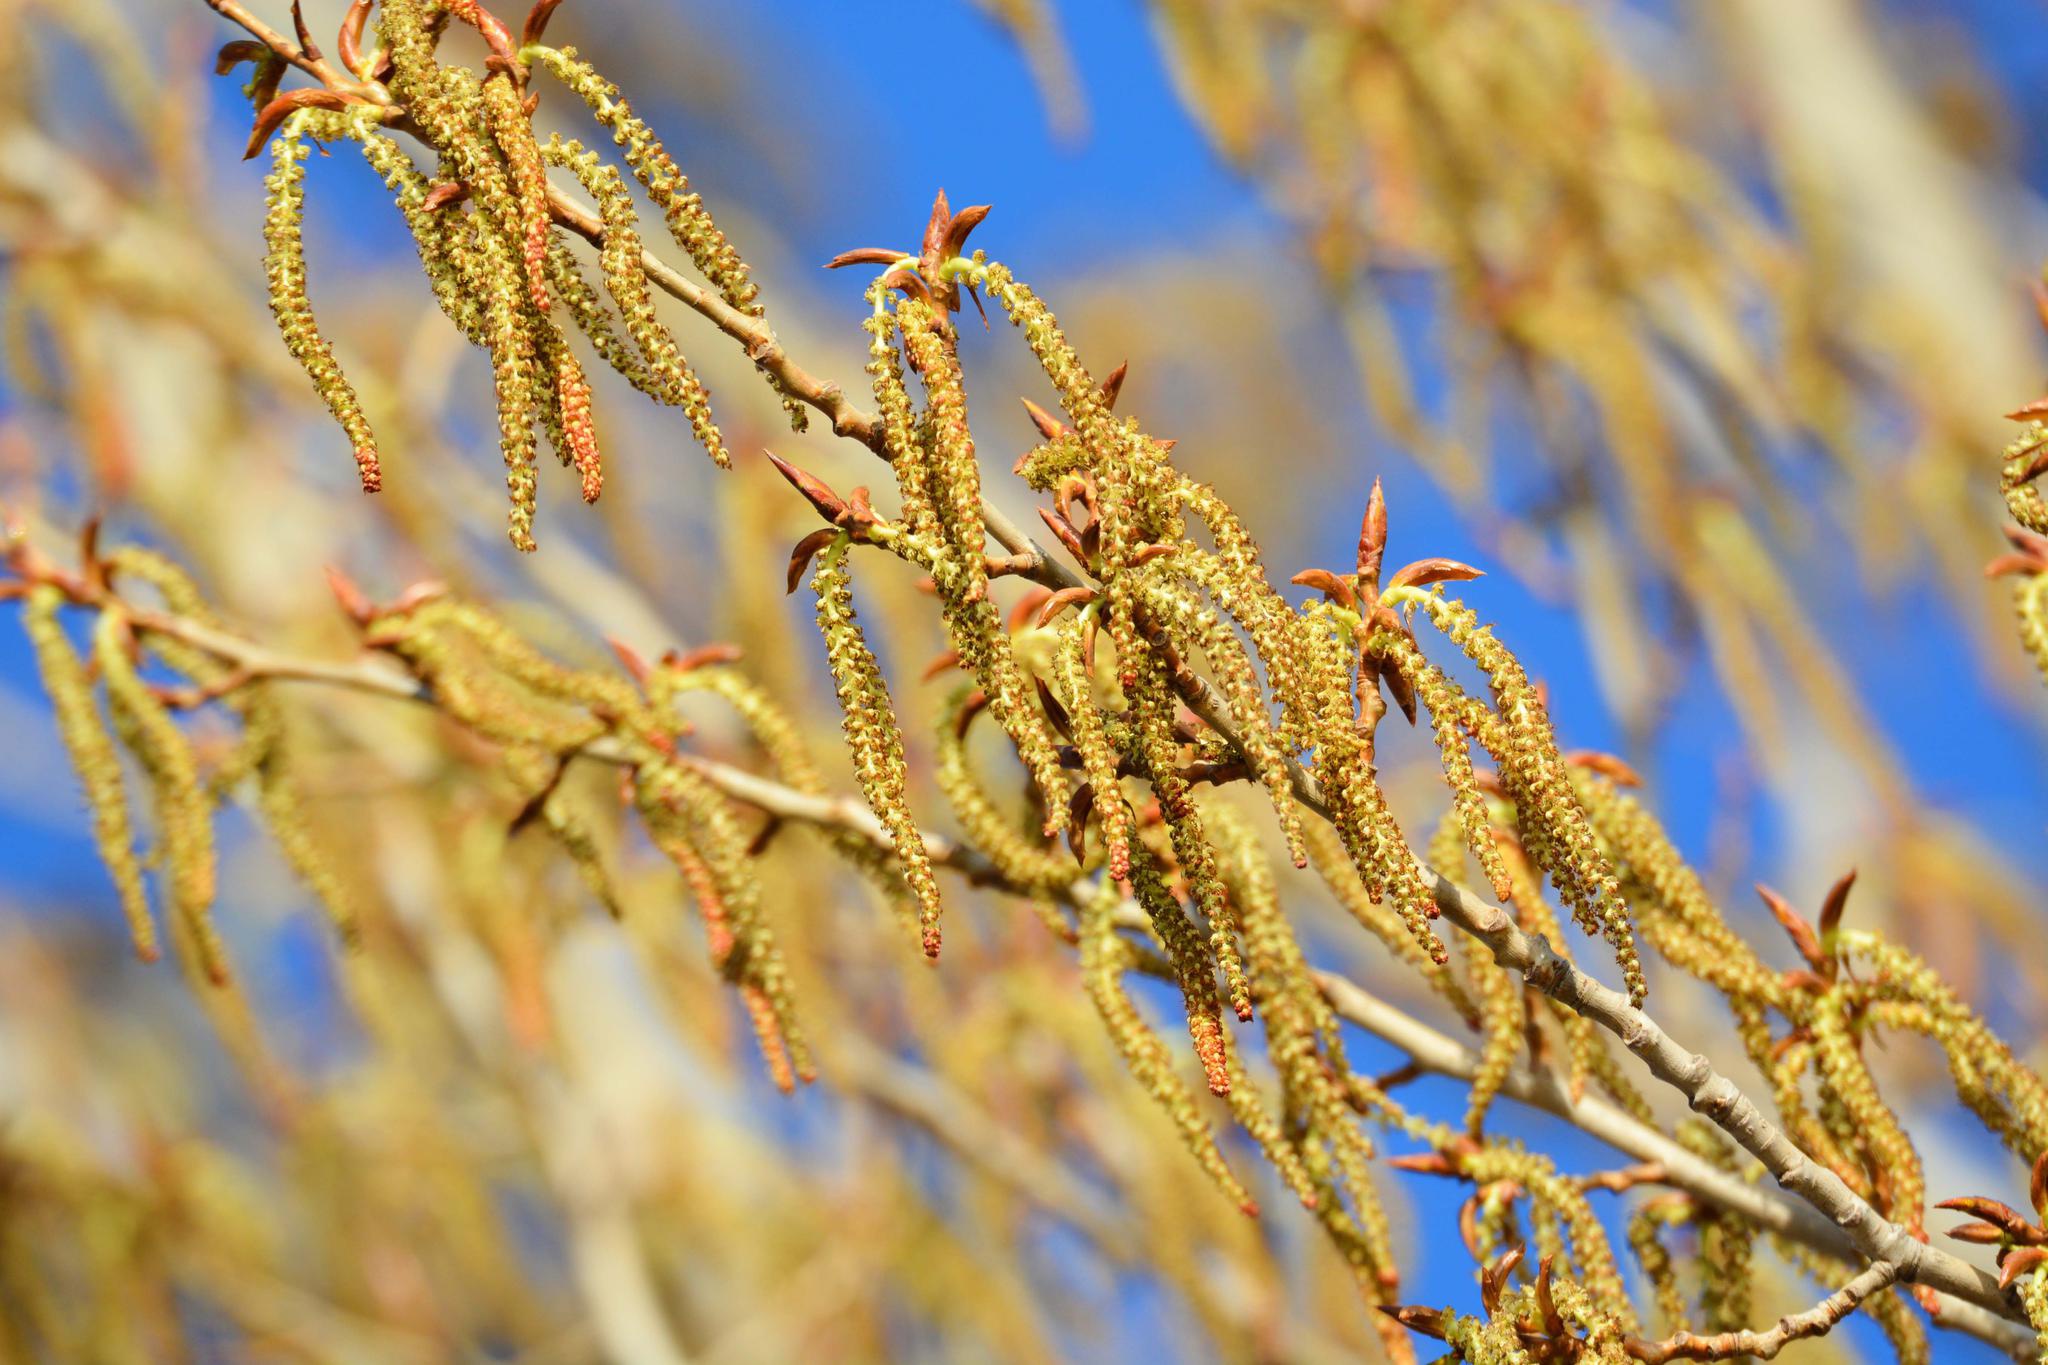 小麦麦穗品种识别数据集 - 哔哩哔哩